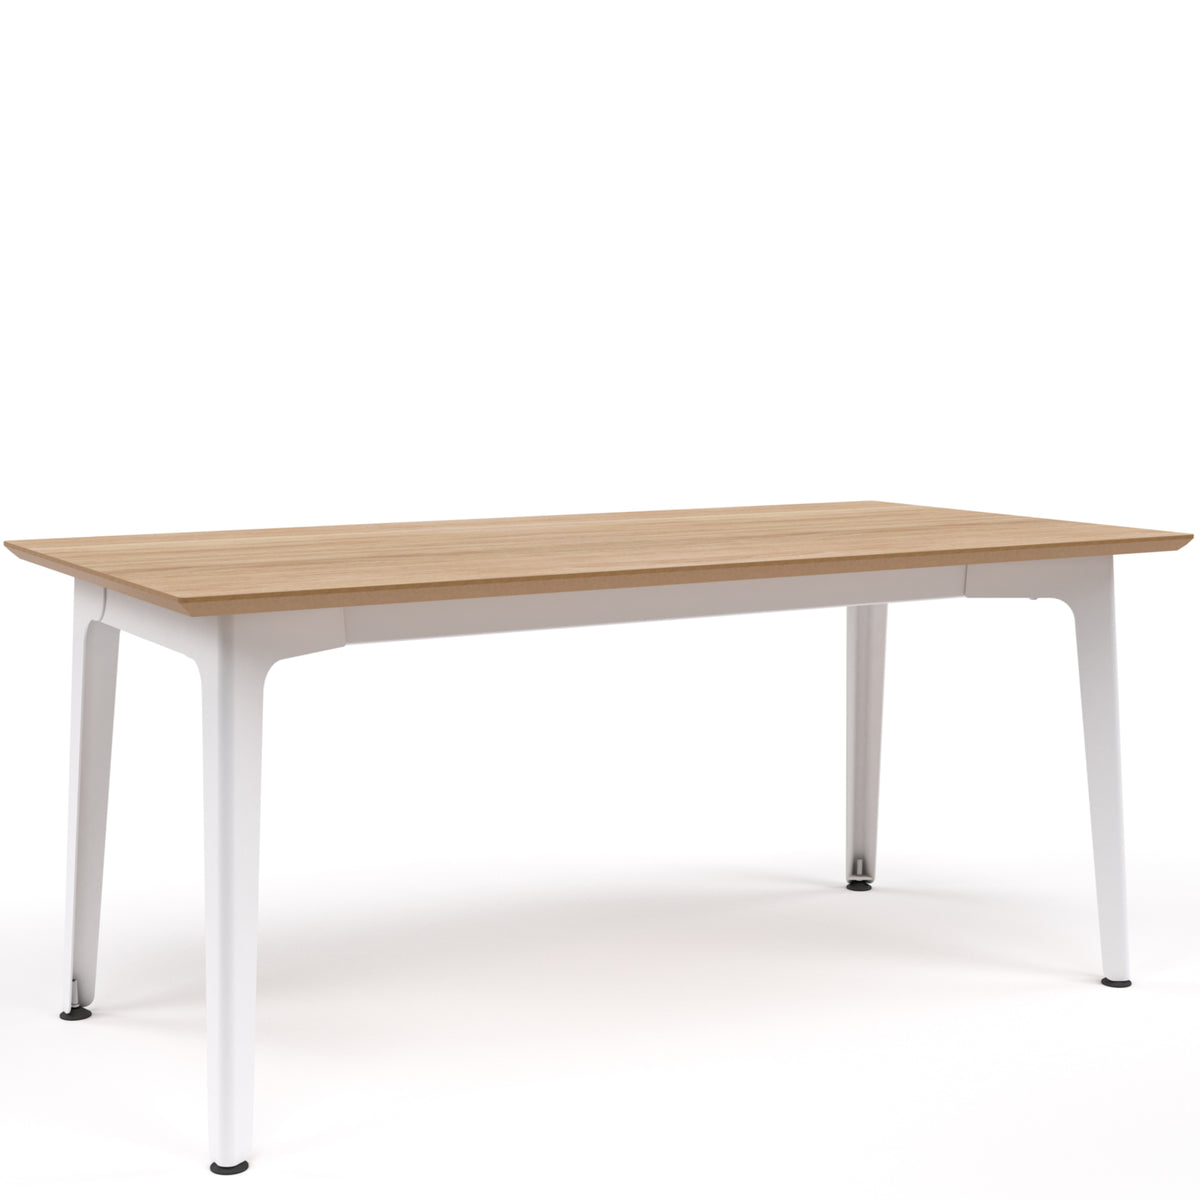 Fold Metal Table 2400x1000